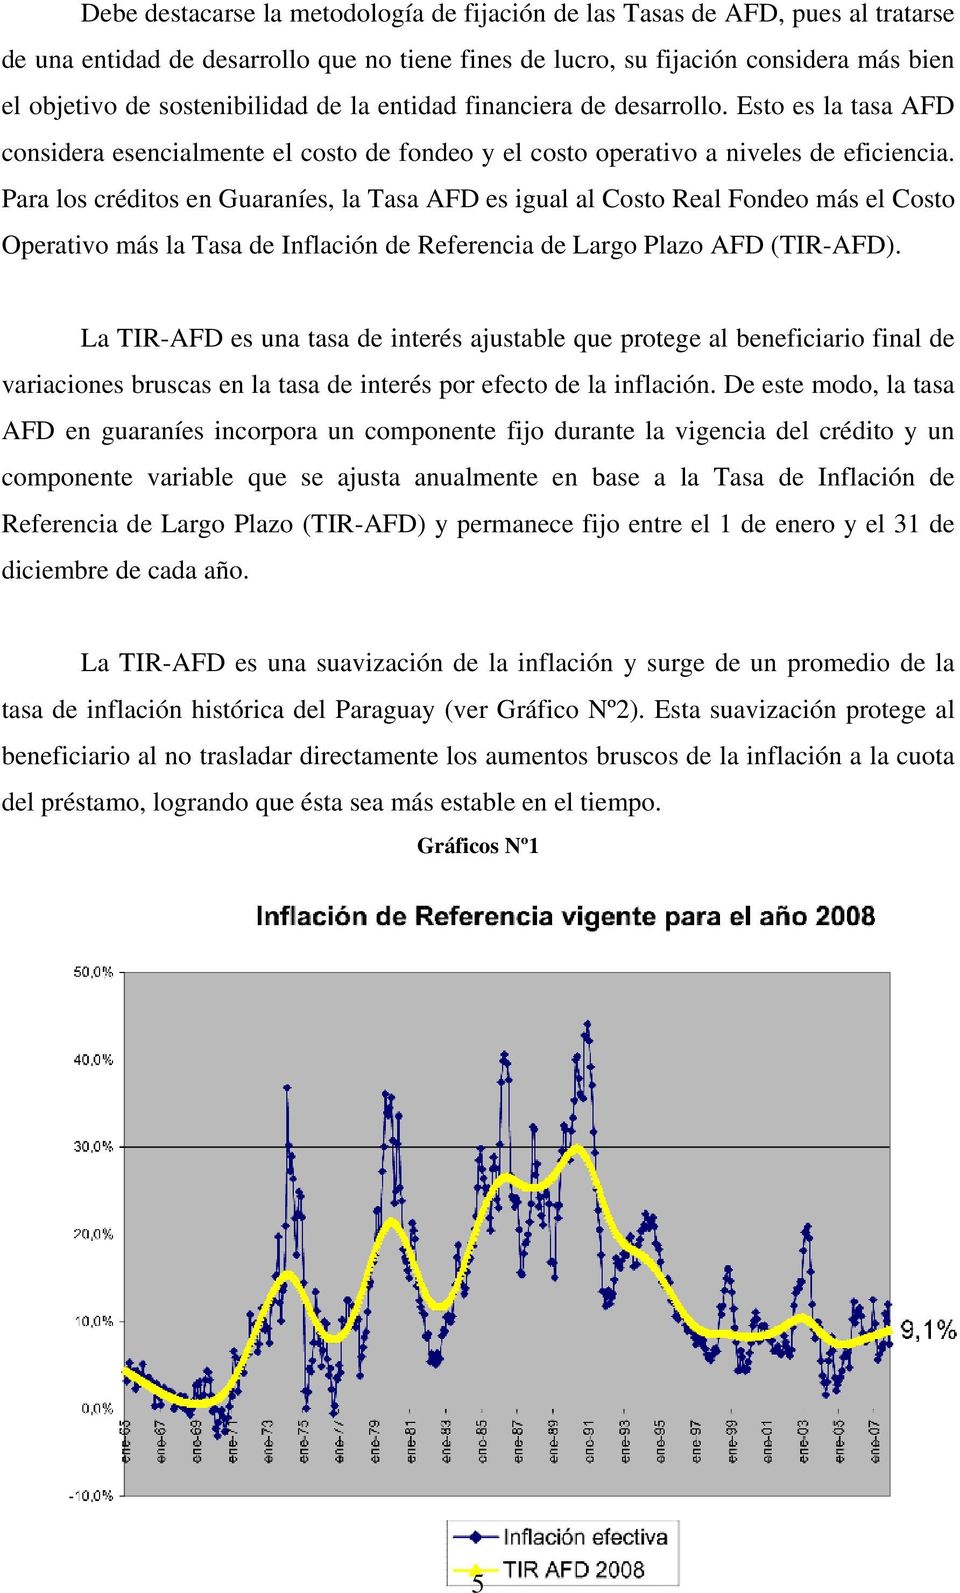 Para los créditos en Guaraníes, la Tasa AFD es igual al Costo Real Fondeo más el Costo Operativo más la Tasa de Inflación de Referencia de Largo Plazo AFD (TIR-AFD).